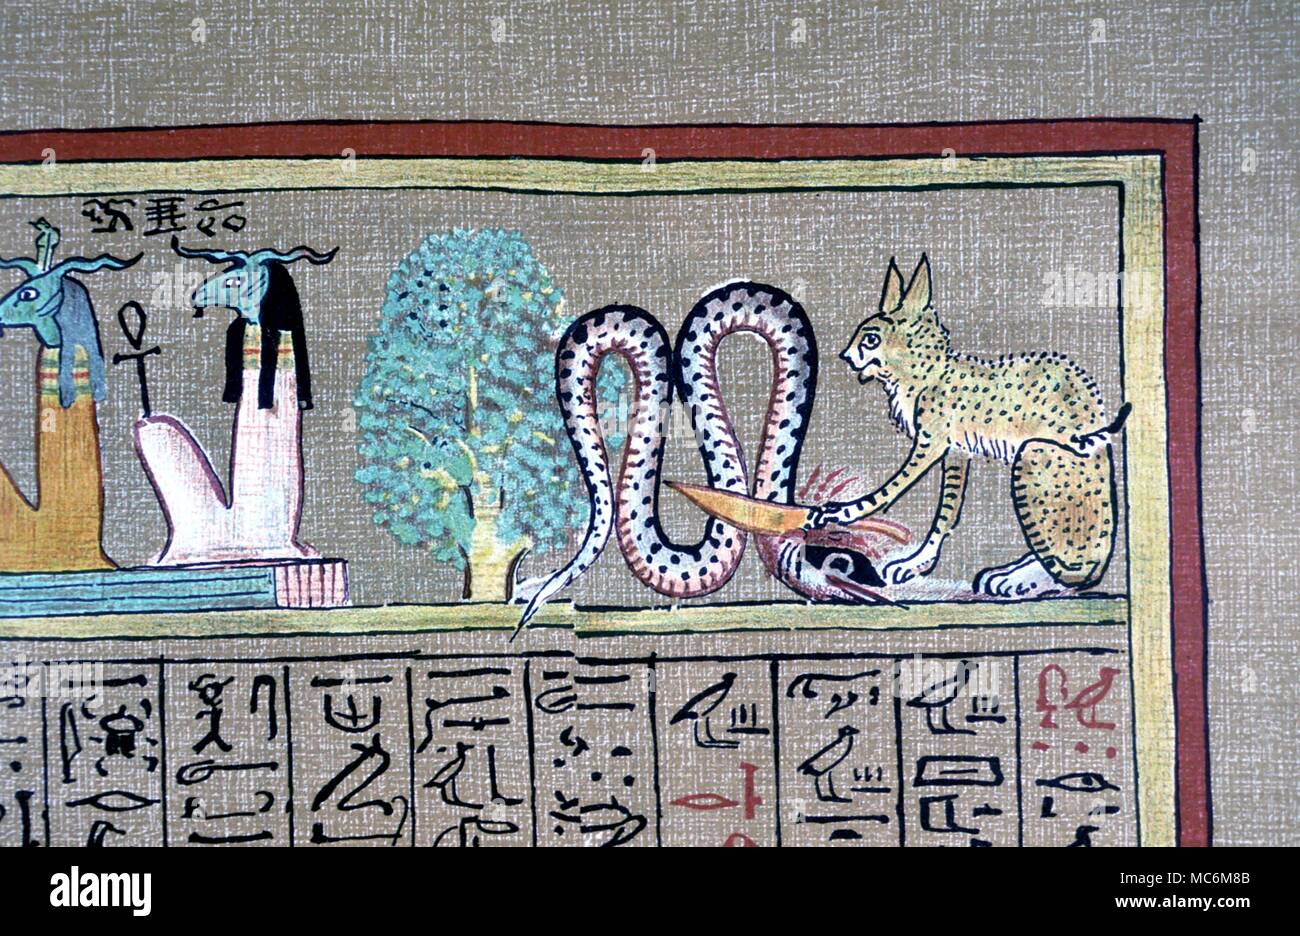 la-mythologie-egyptienne-persea-arbre-un-chat-en-face-de-l-arbre-persea-est-couper-la-tete-du-serpent-symbole-du-dieu-soleil-ra-terrassant-le-dragon-de-l-obscurite-a-partir-de-la-bouger-d-edition-de-livre-des-morts-egyptien-mc6m8b.jpg